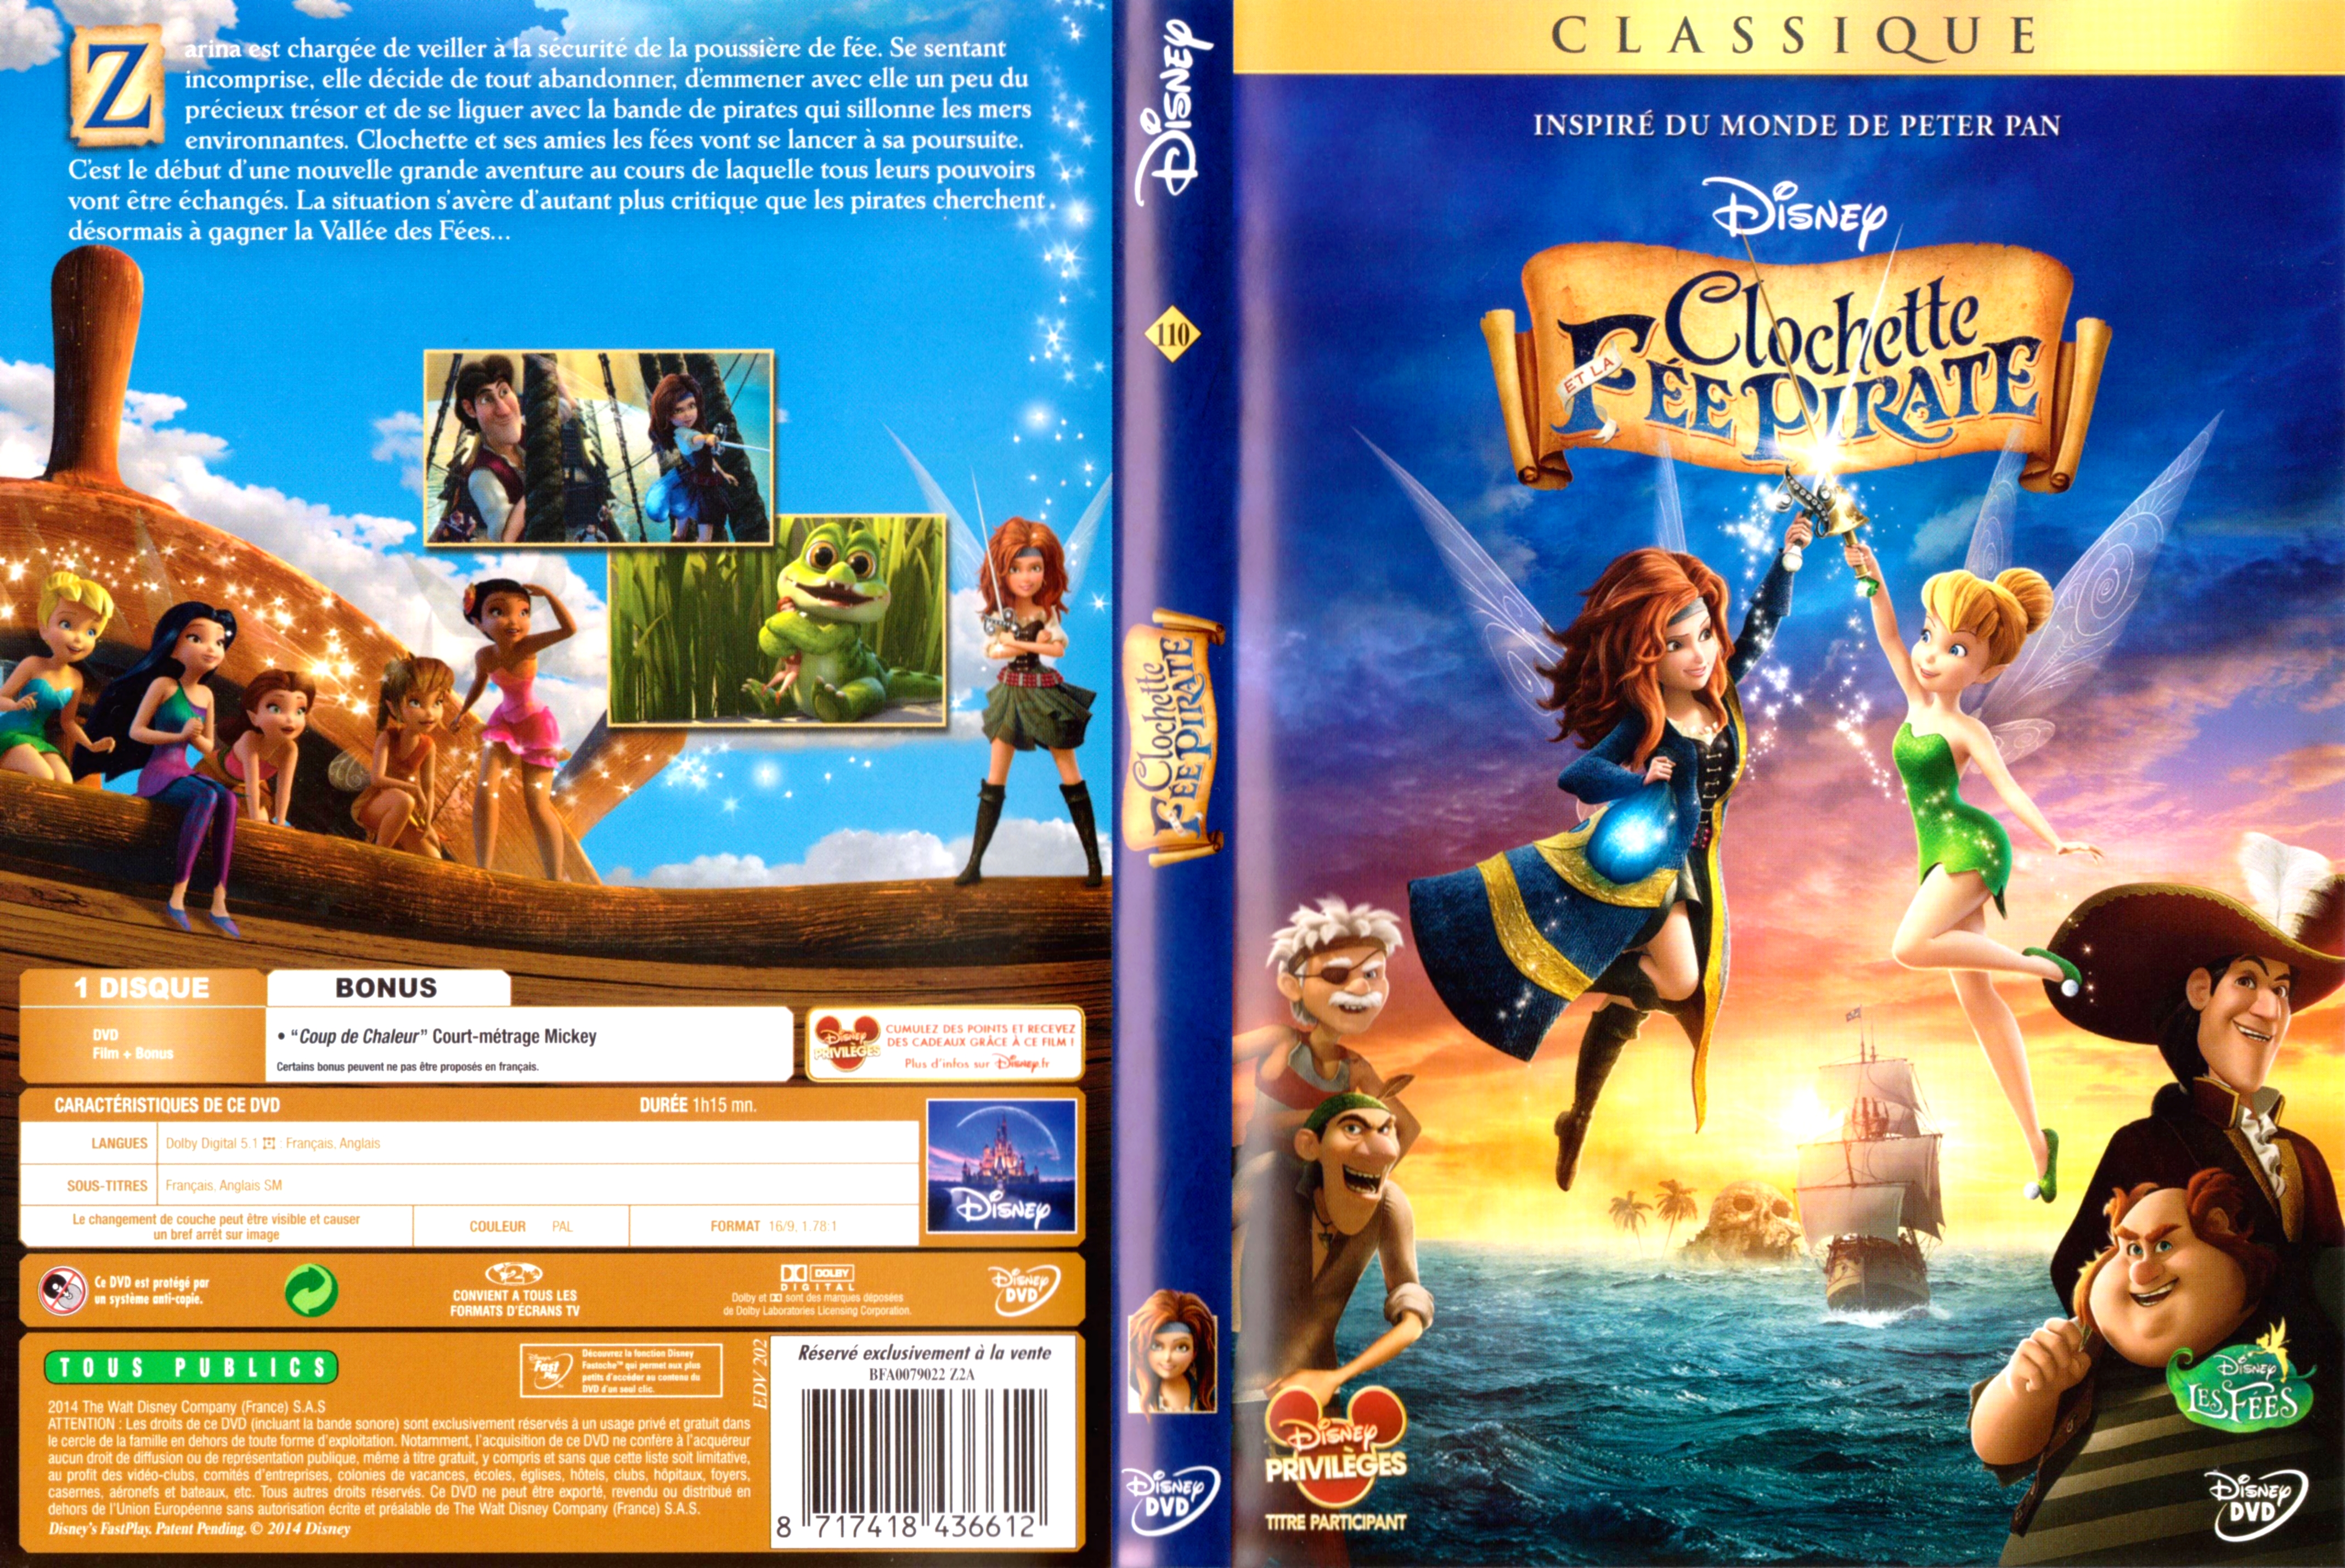 Jaquette DVD Clochette et la fe pirate v3